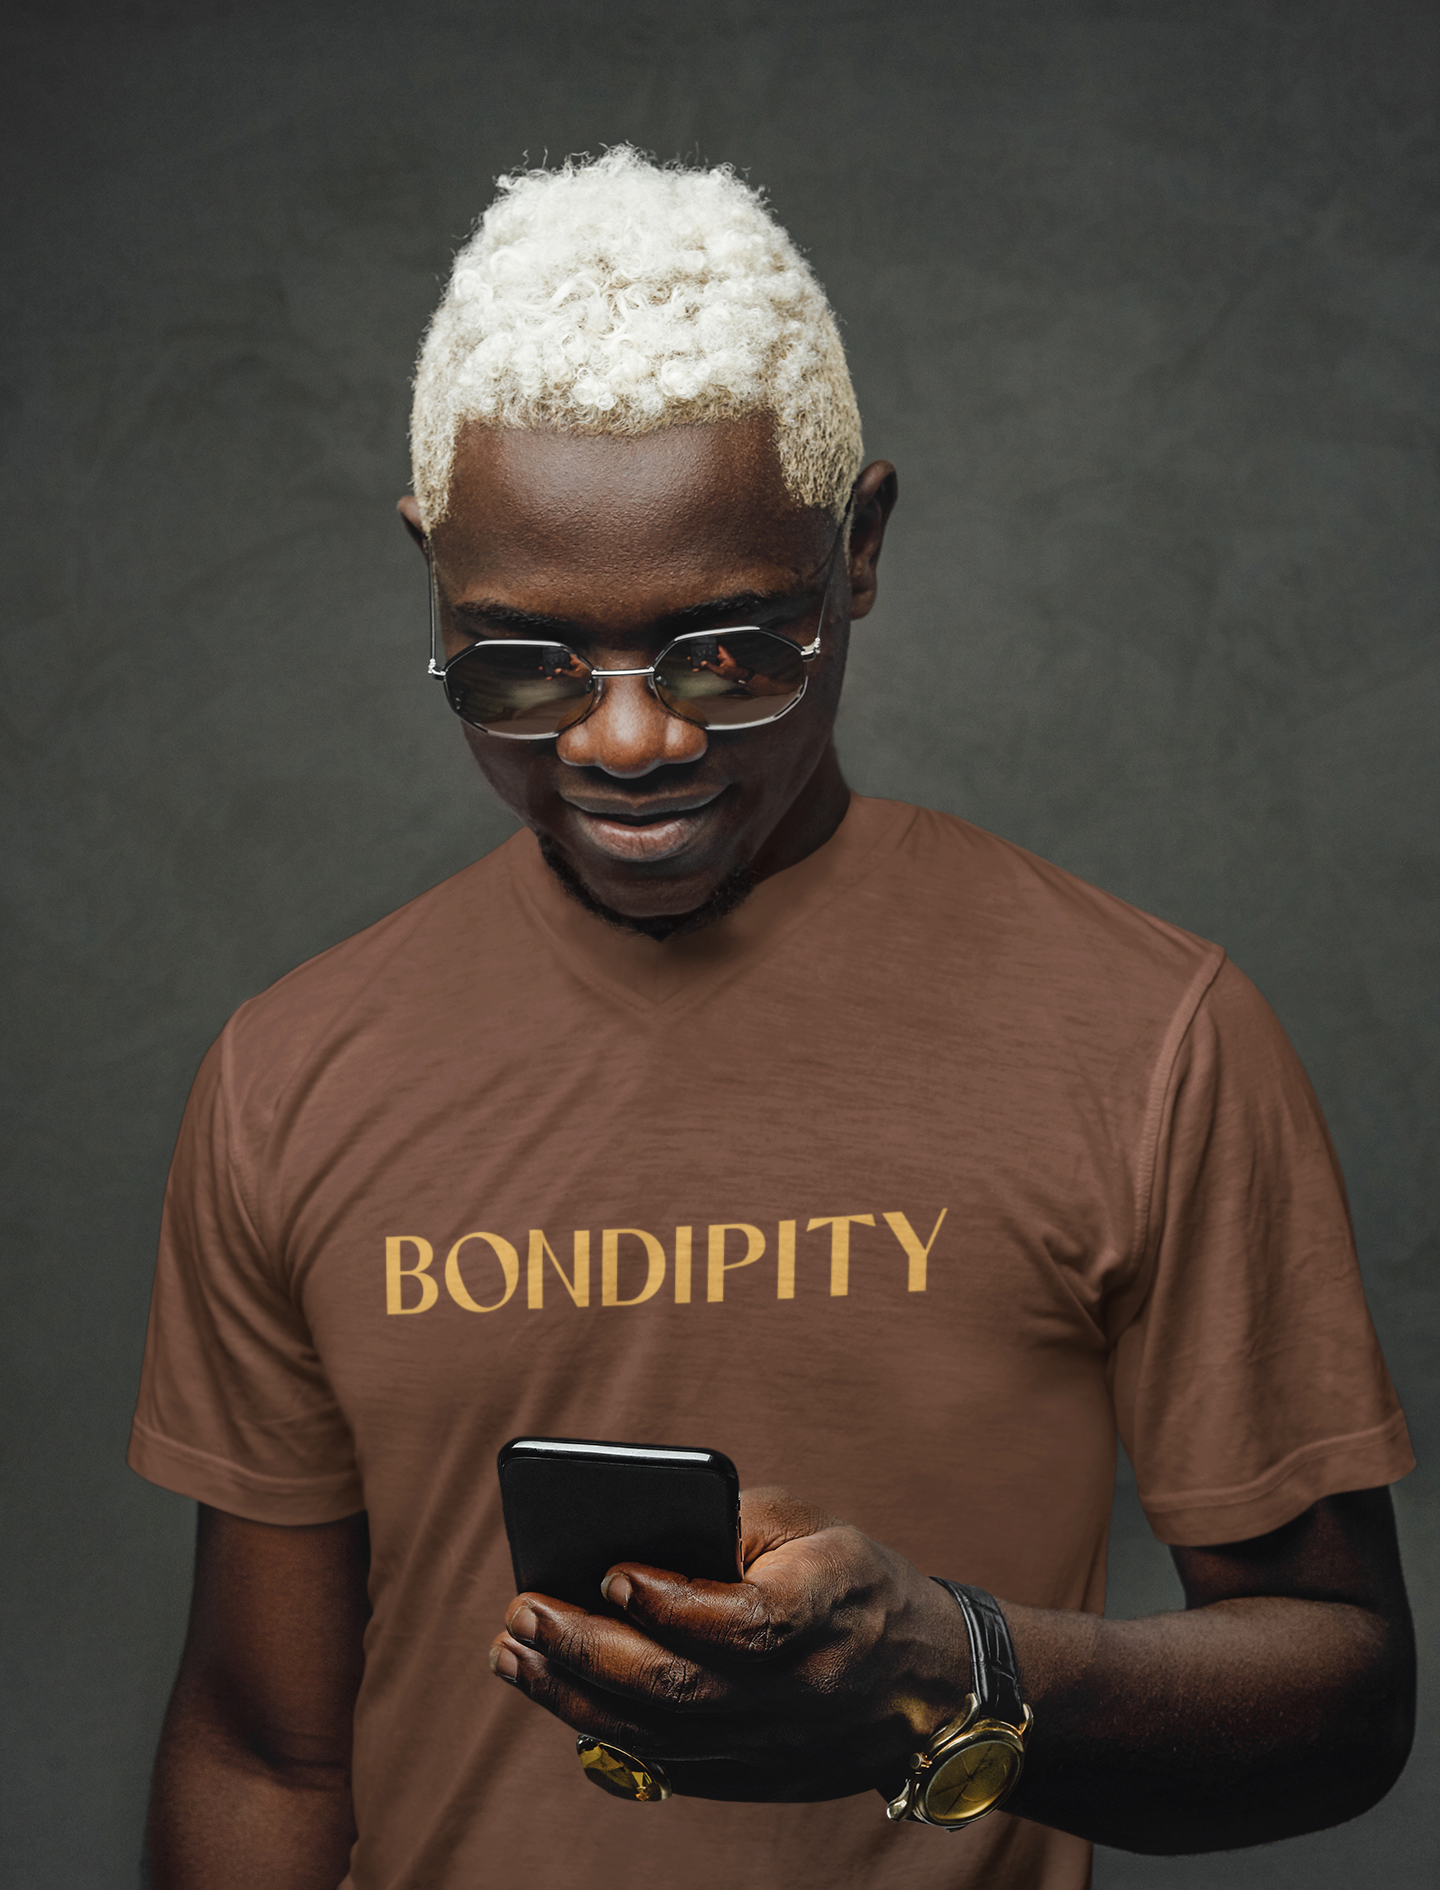 Custom shirt design for Bondipity